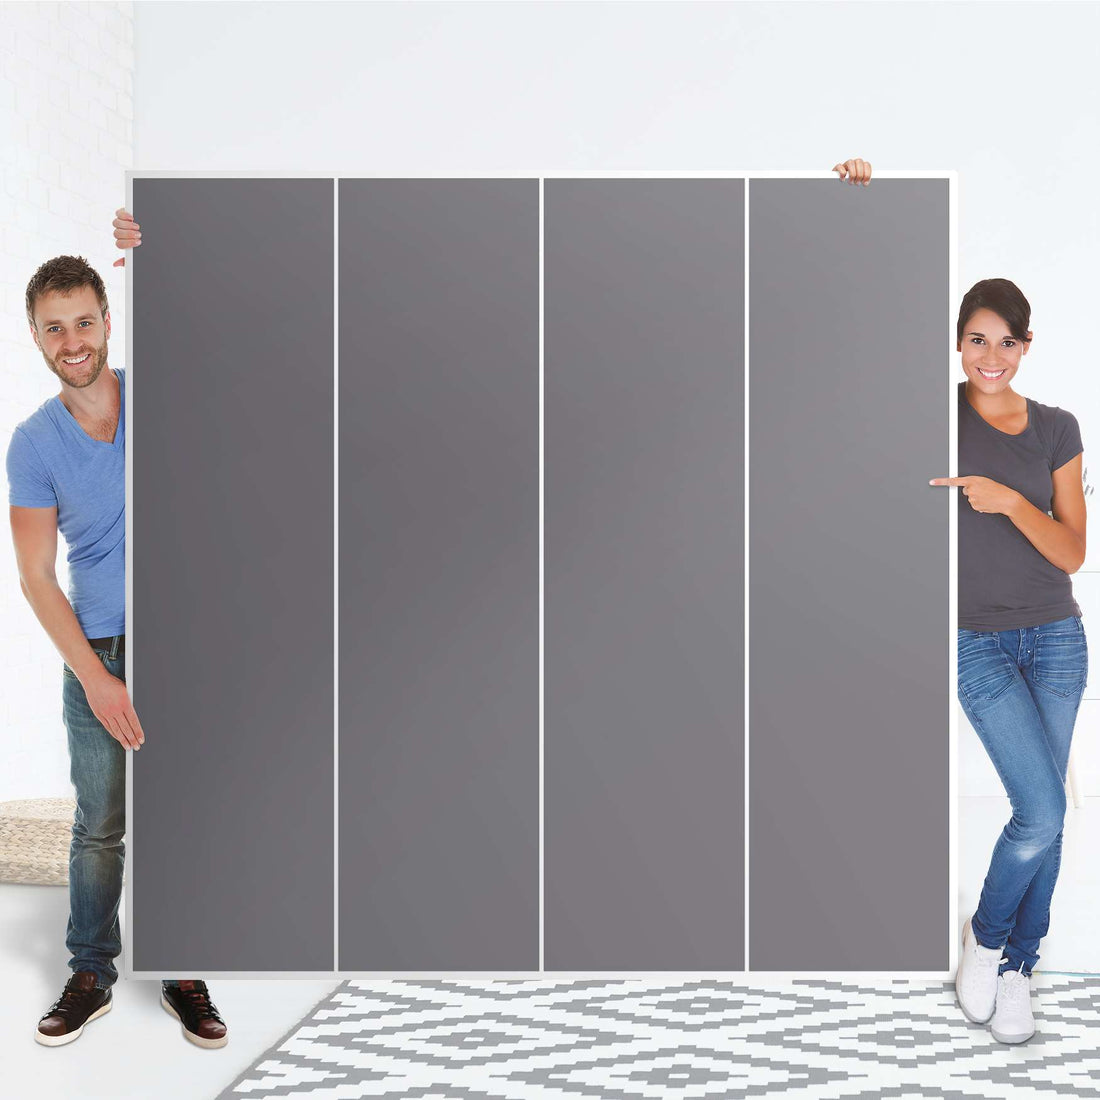 Klebefolie für Schränke Grau Light - IKEA Pax Schrank 201 cm Höhe - 4 Türen - Folie